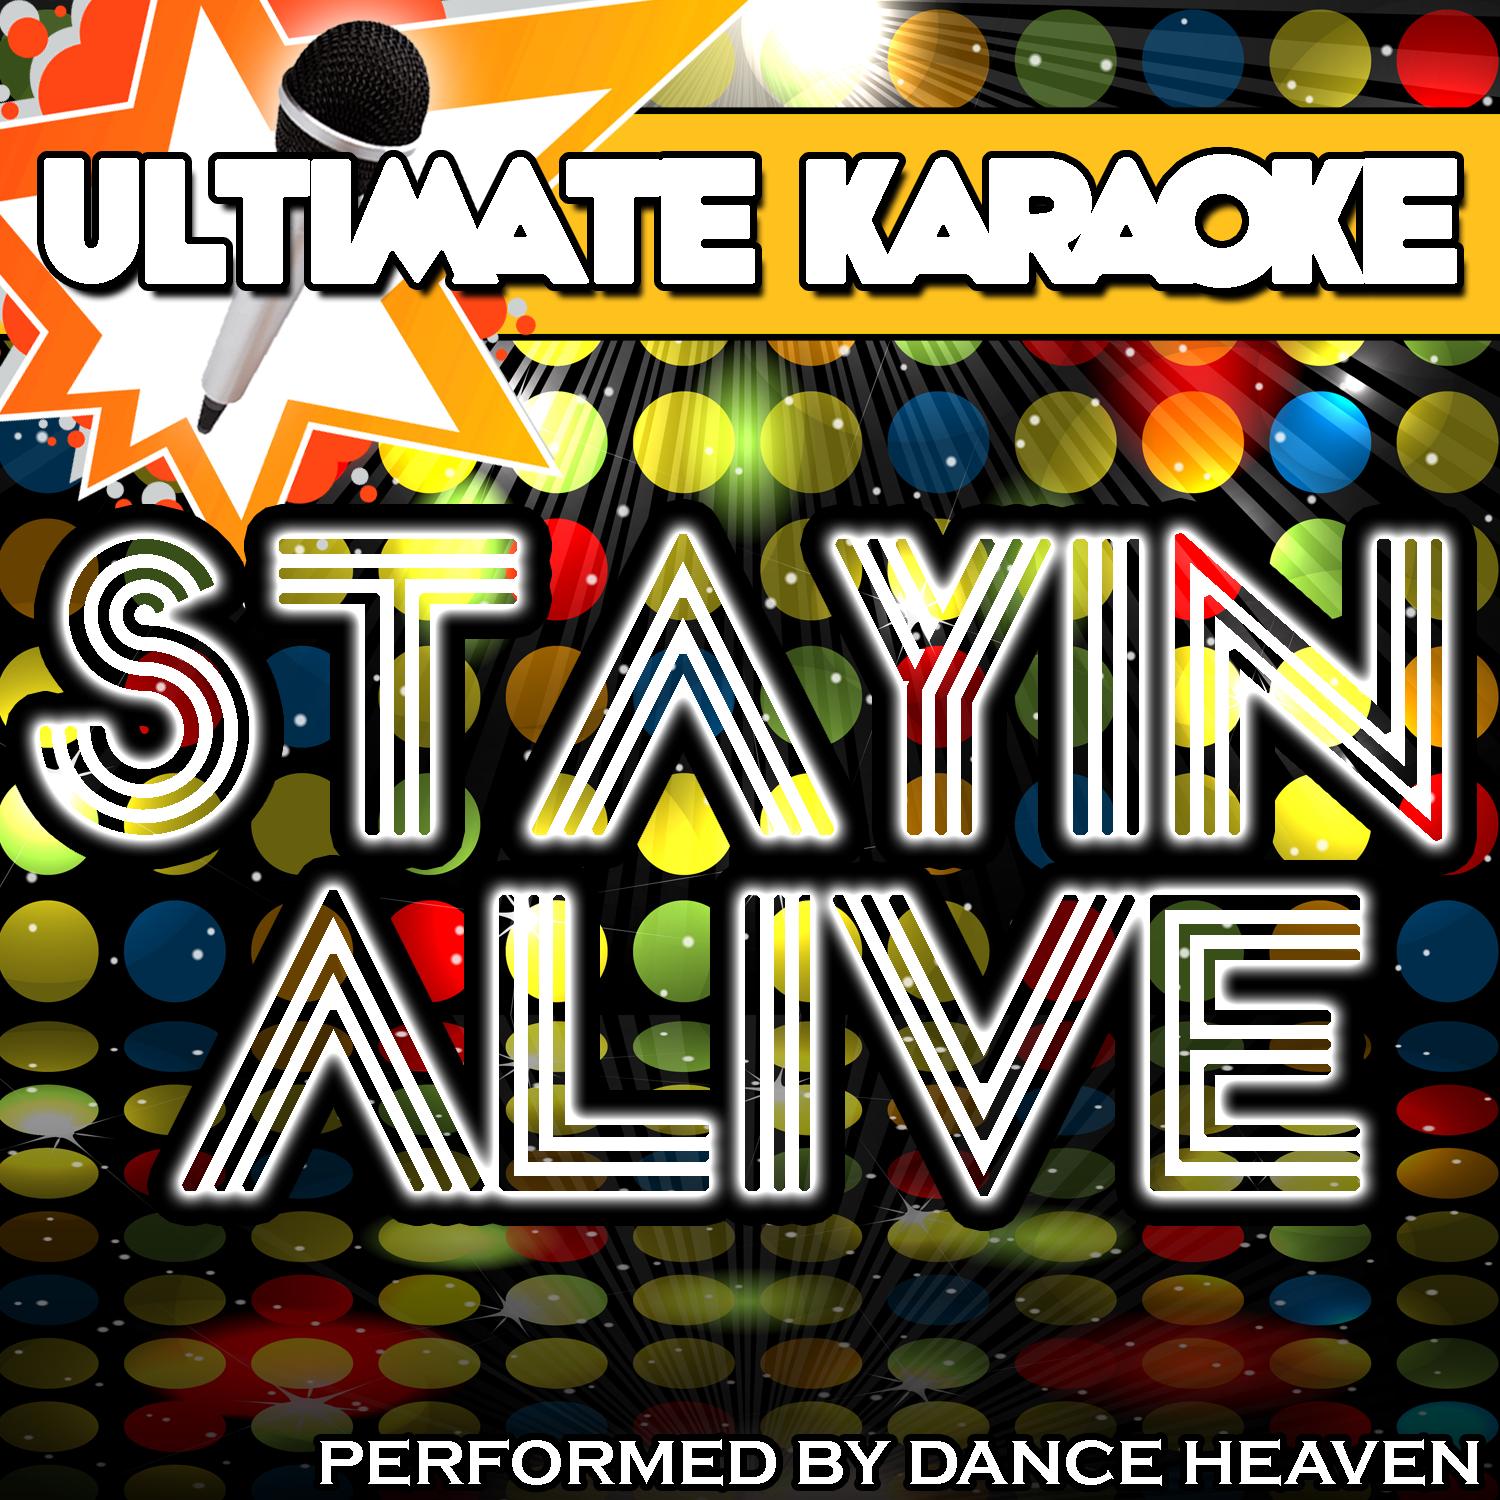 Ultimate Karaoke: Stayin' Alive